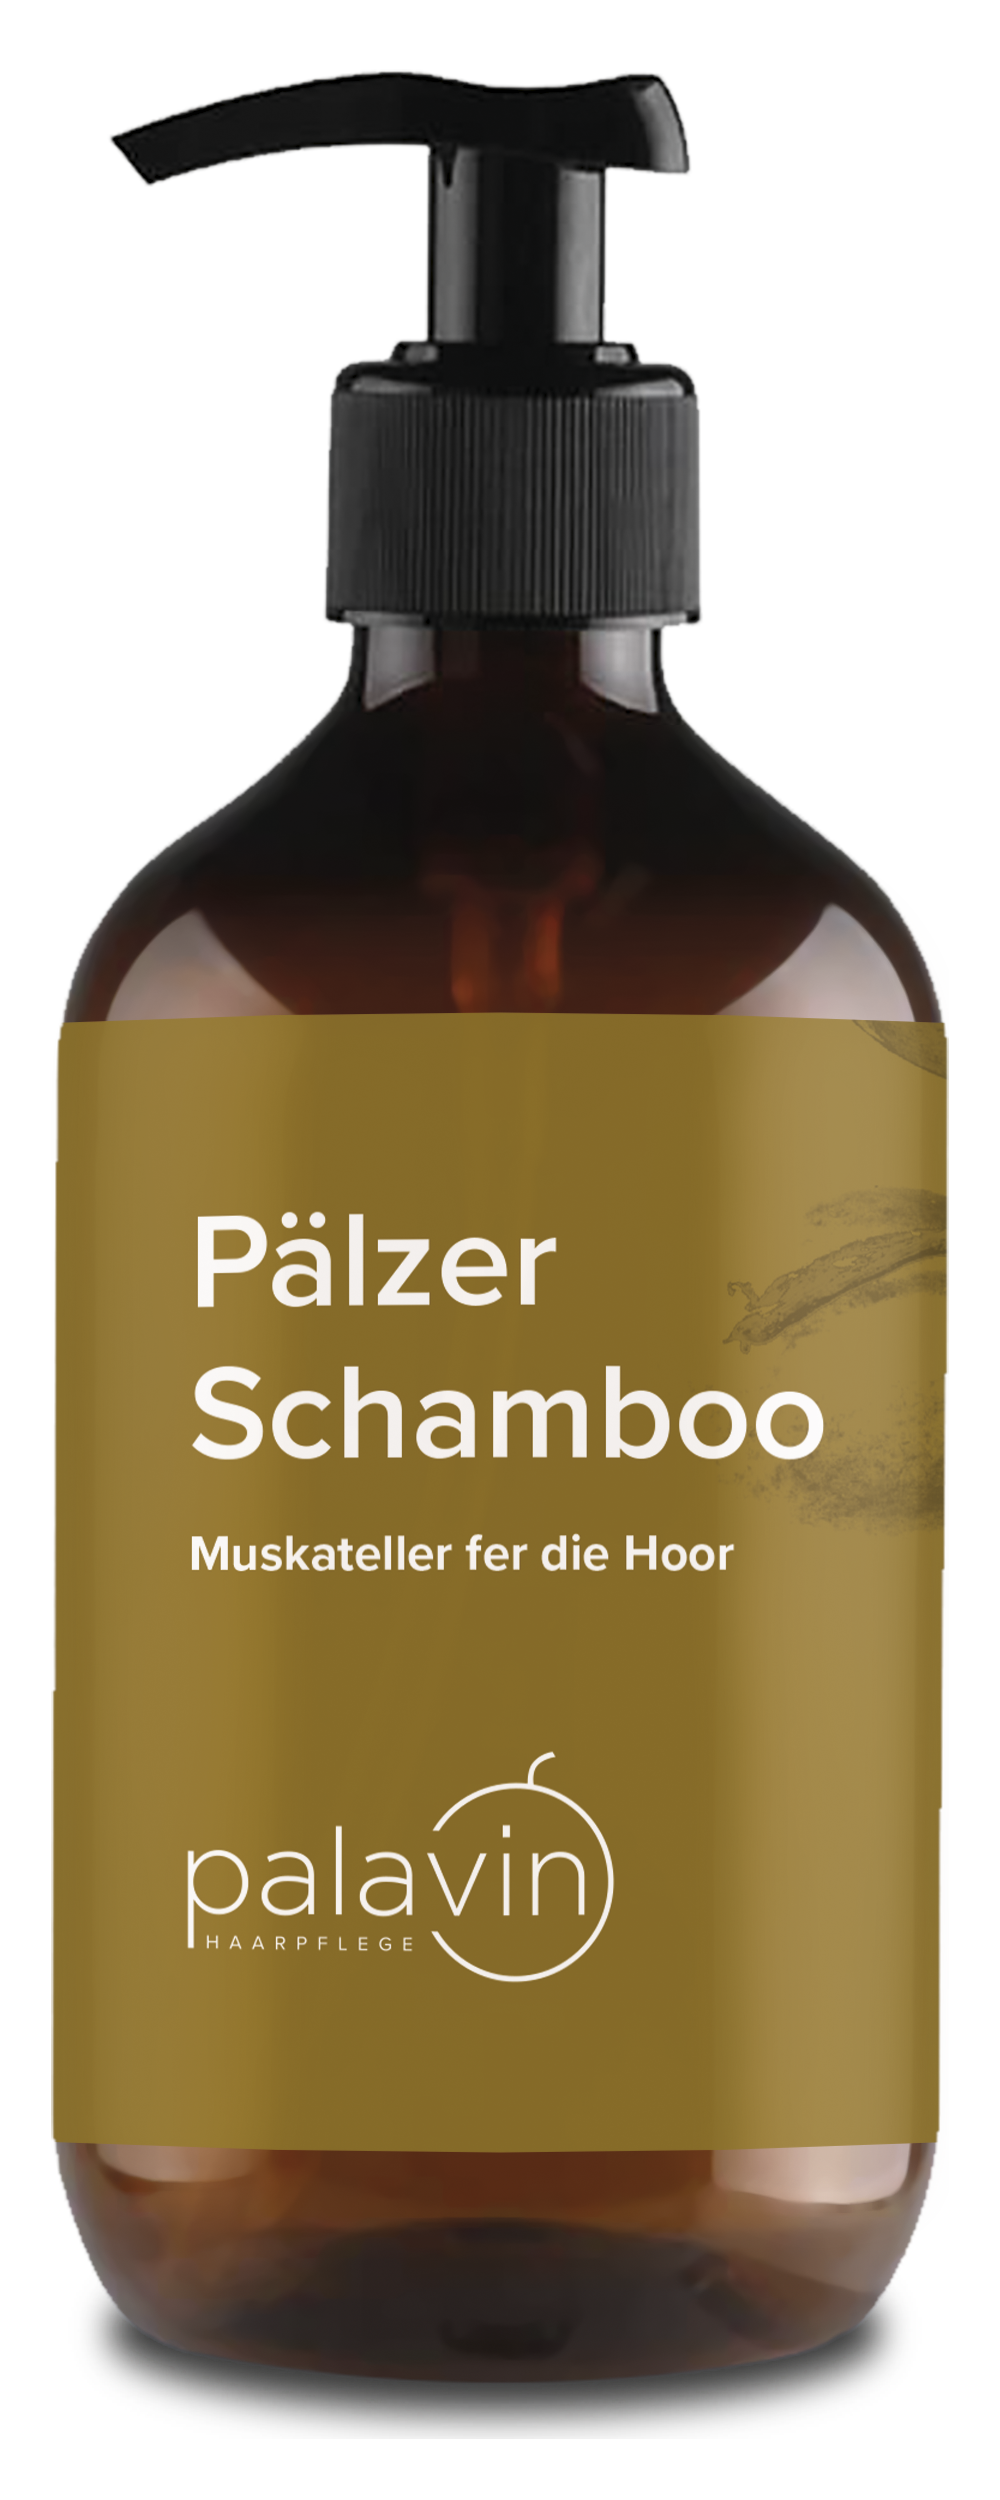 Pälzer Schamboo (Muskateller) - Pfälzer Freiheit